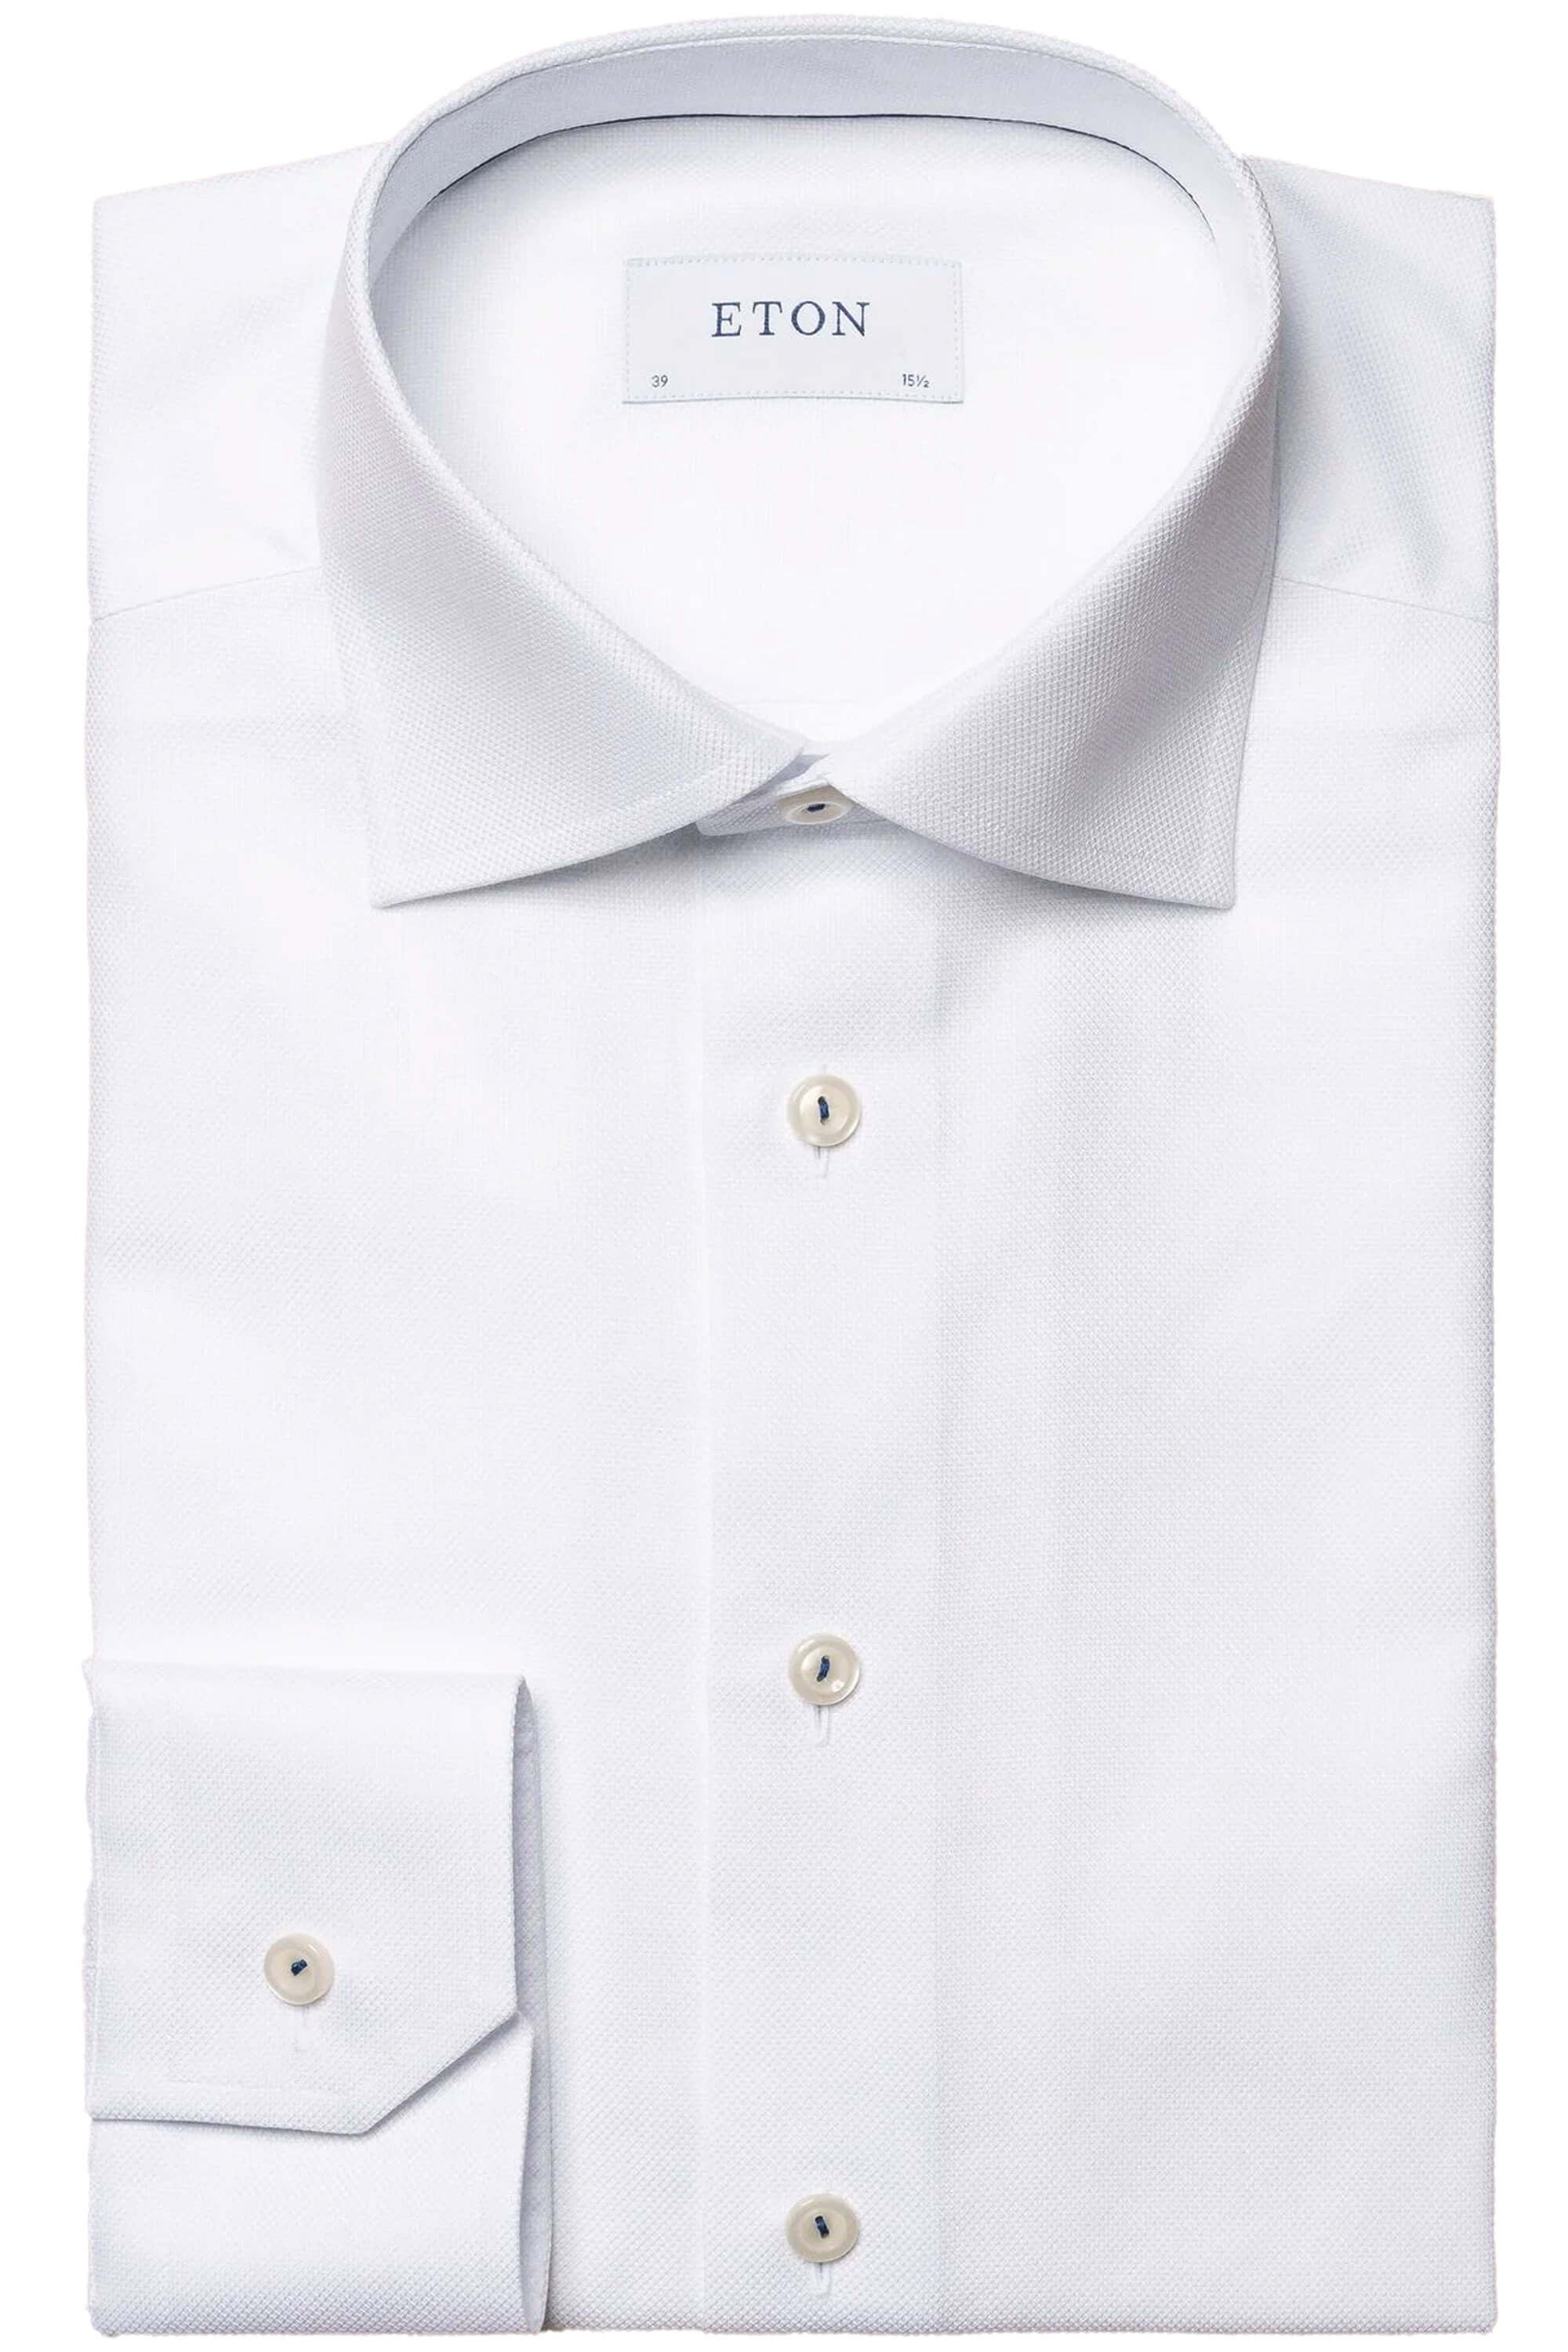 Eton Plain White Dobby Shirt